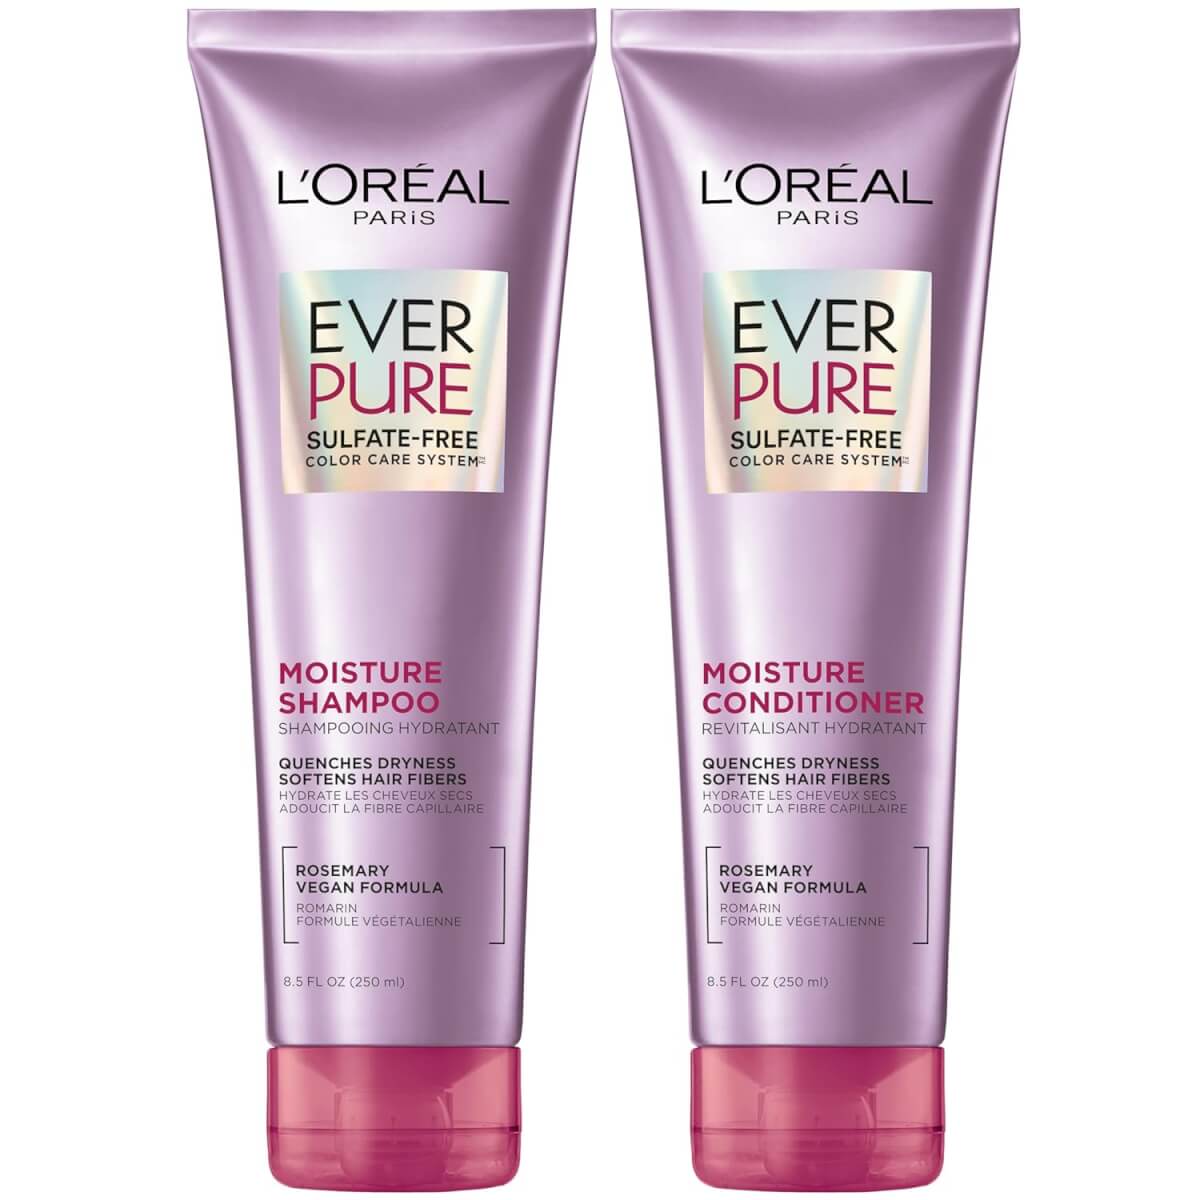 L'Oréal Paris Ever Pure Sulfate Free Moisture Shampoo